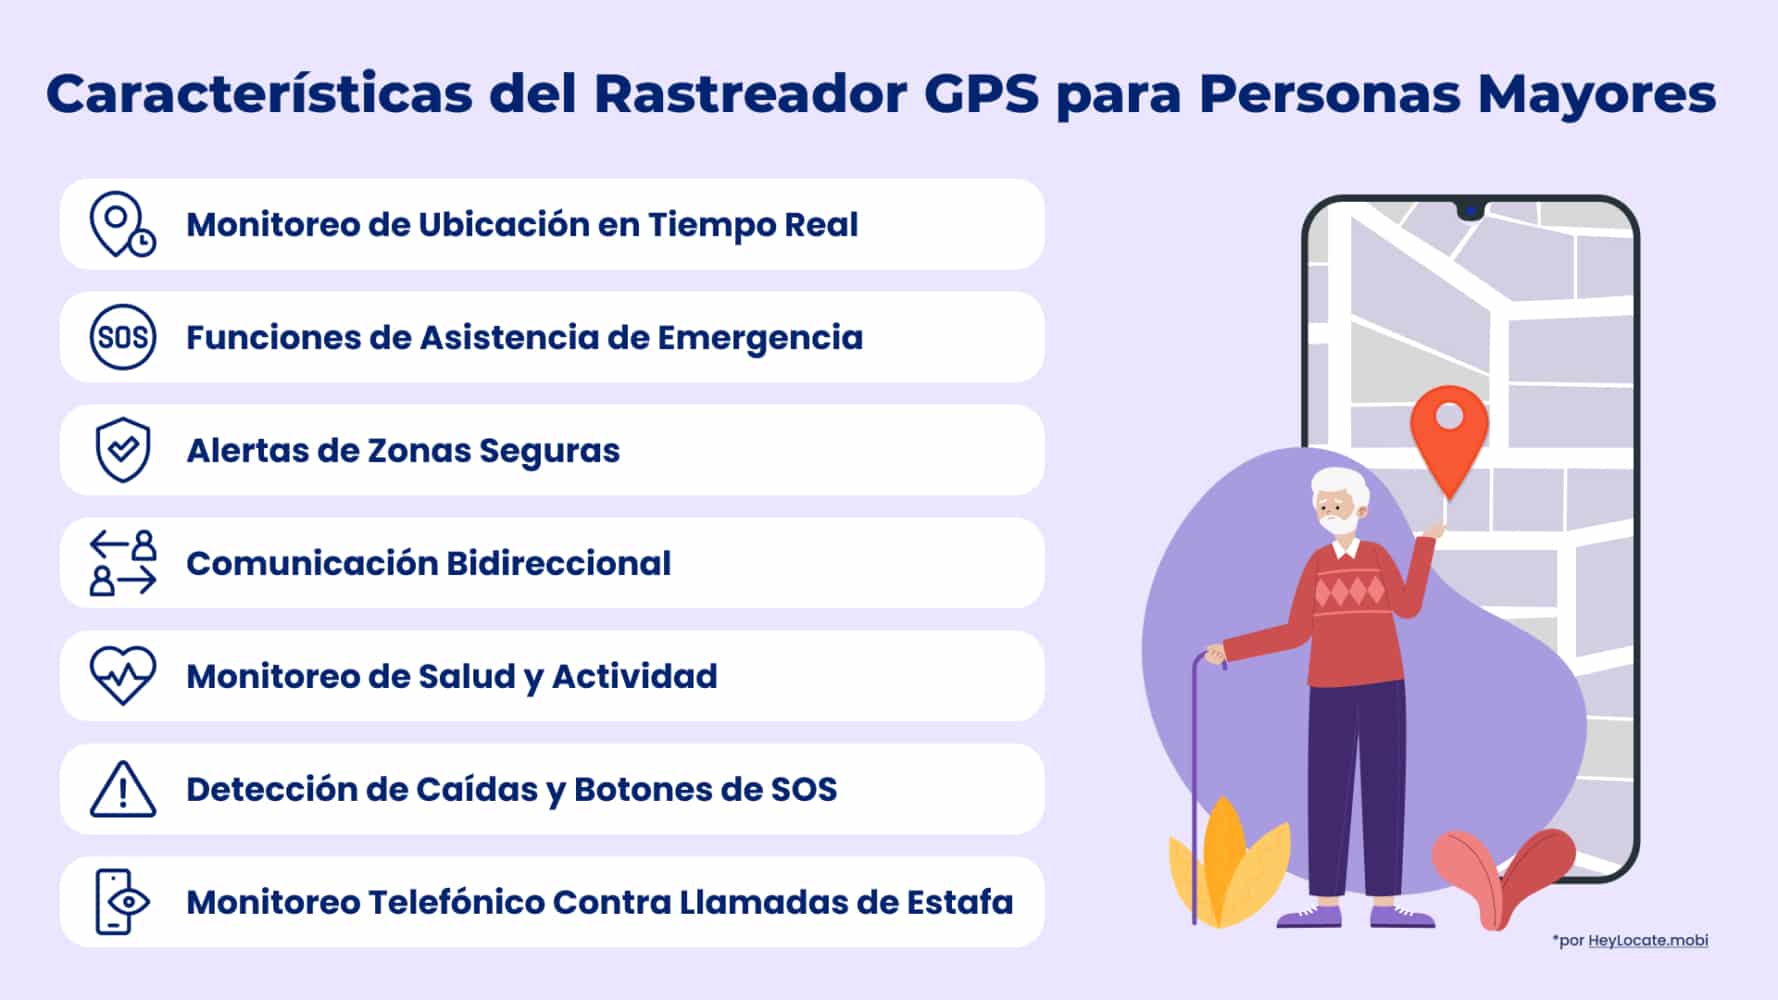 Lista de las principales funciones del localizador GPS para personas mayores mostradas en la infografía de HeyLocate
